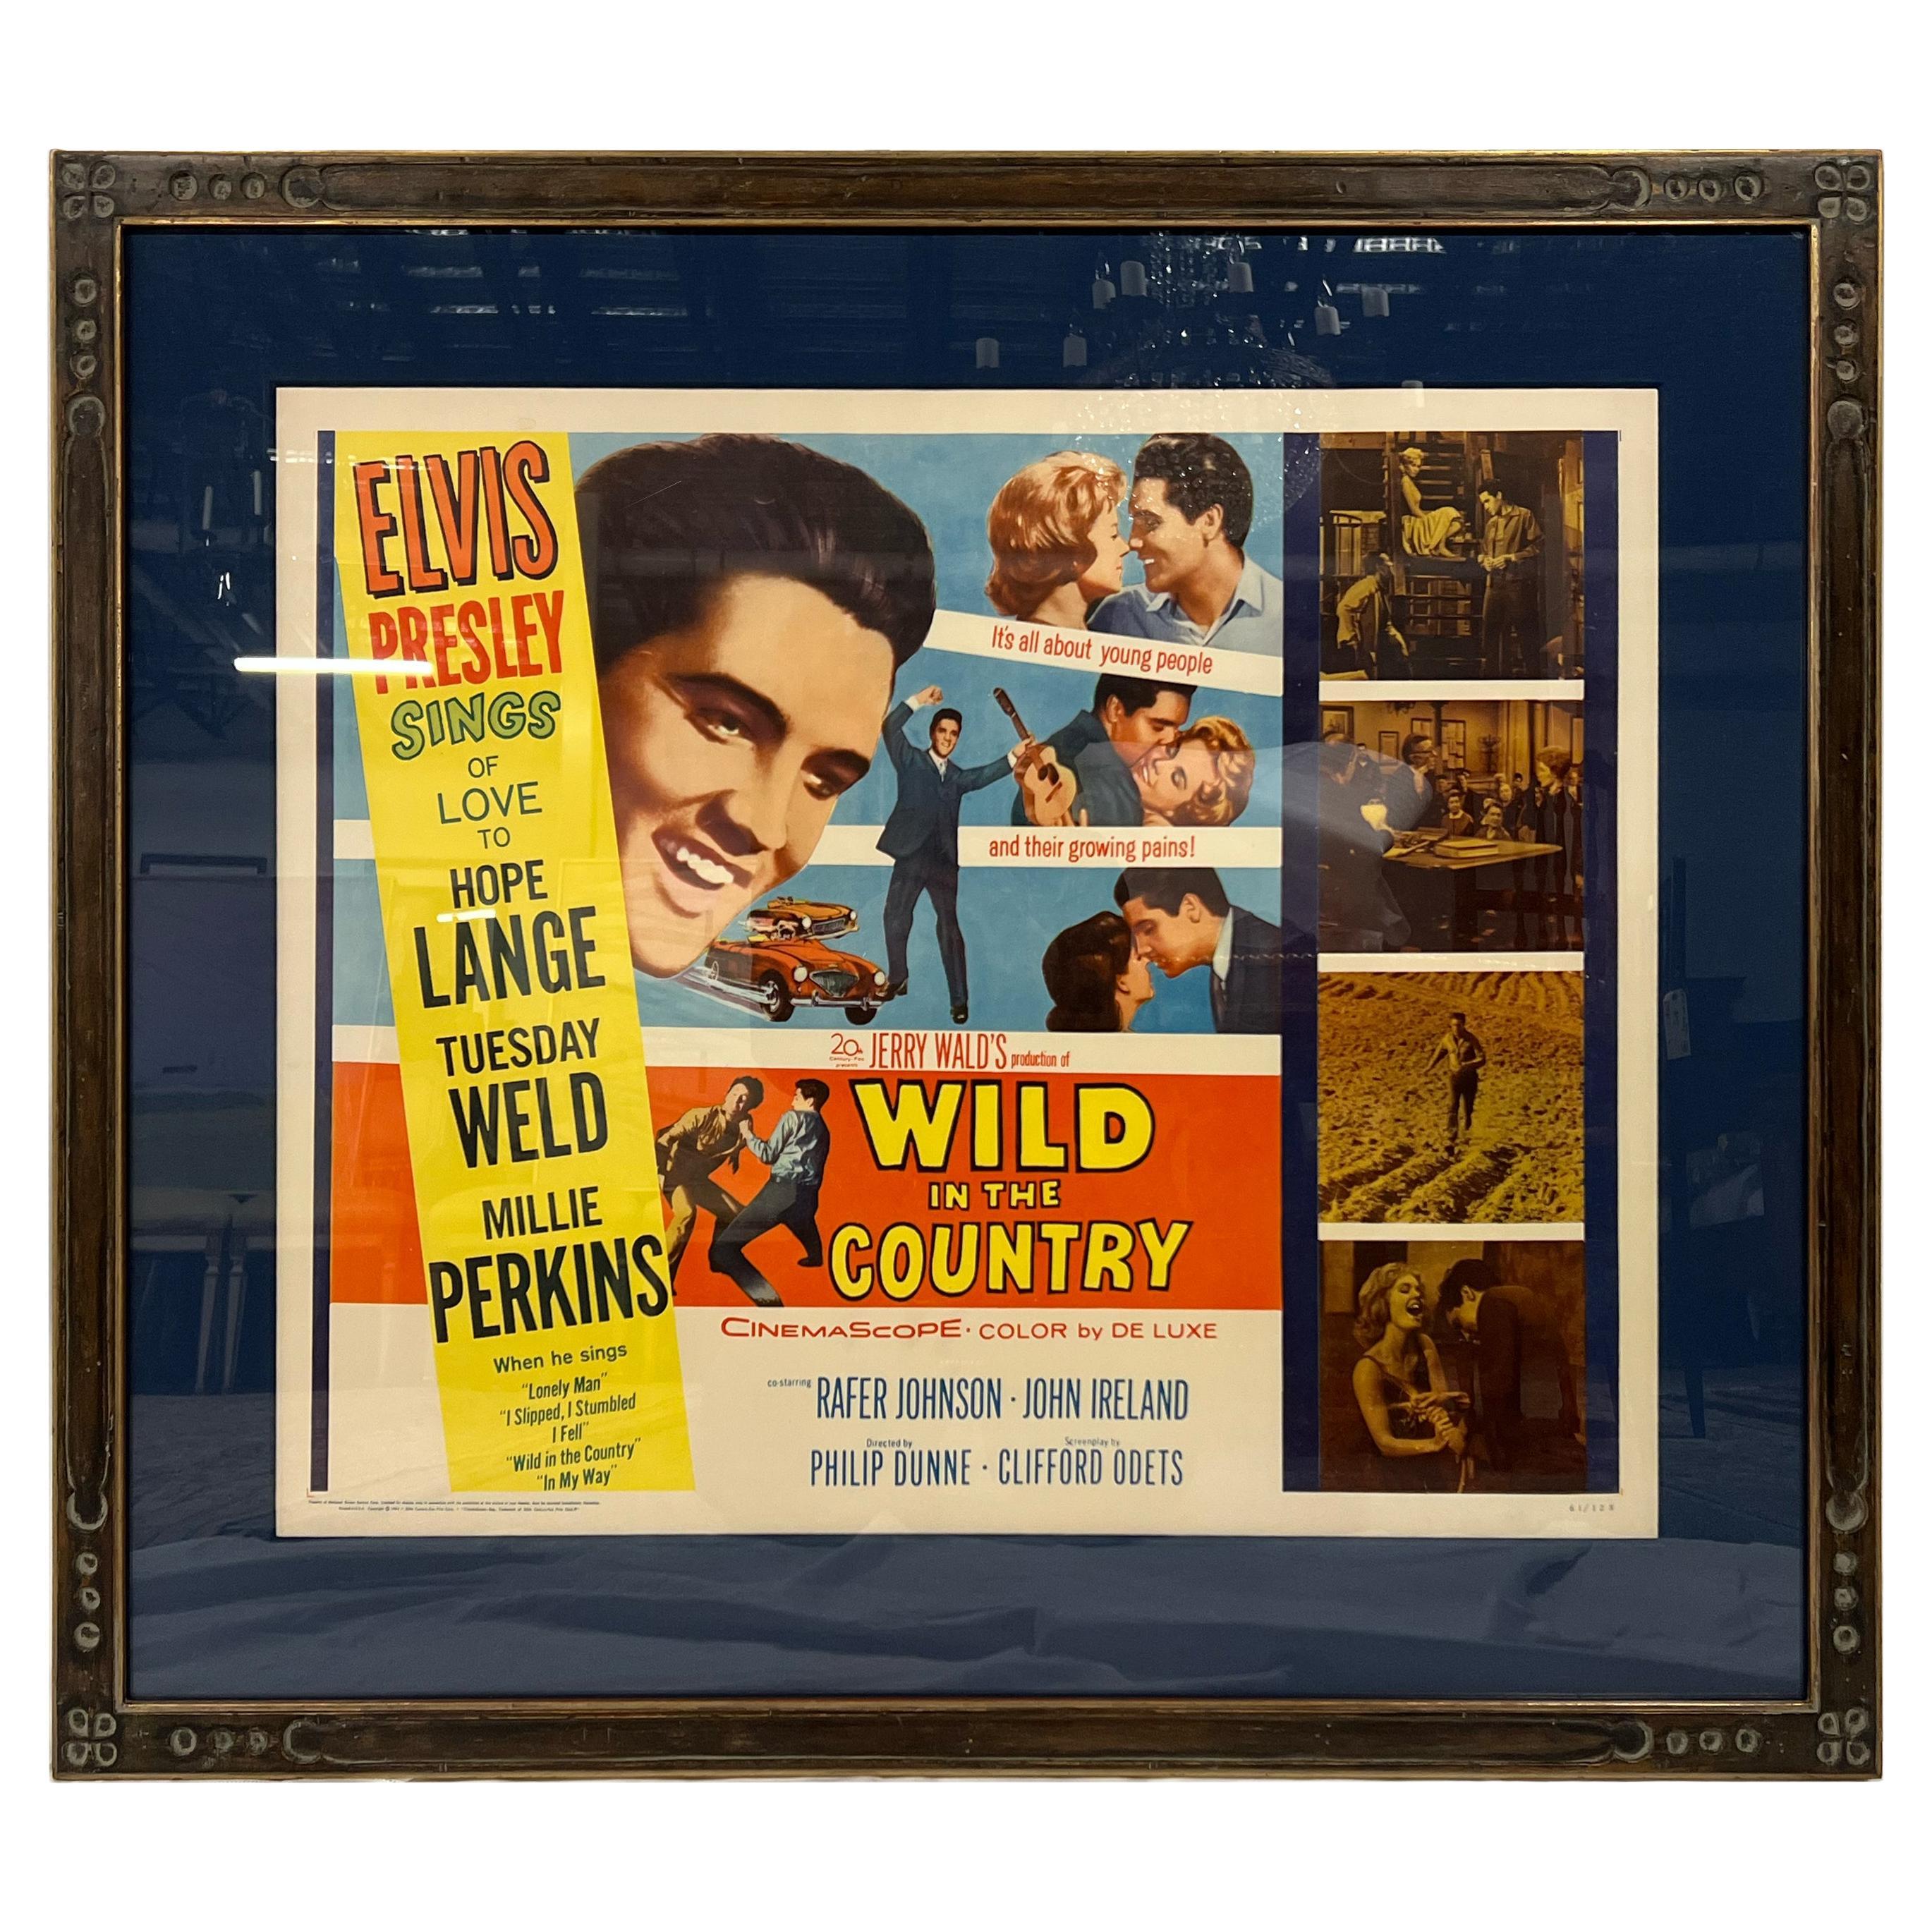  Framed, Original Vintage "Elvis Presley, Wild in the Country" Poster For Sale